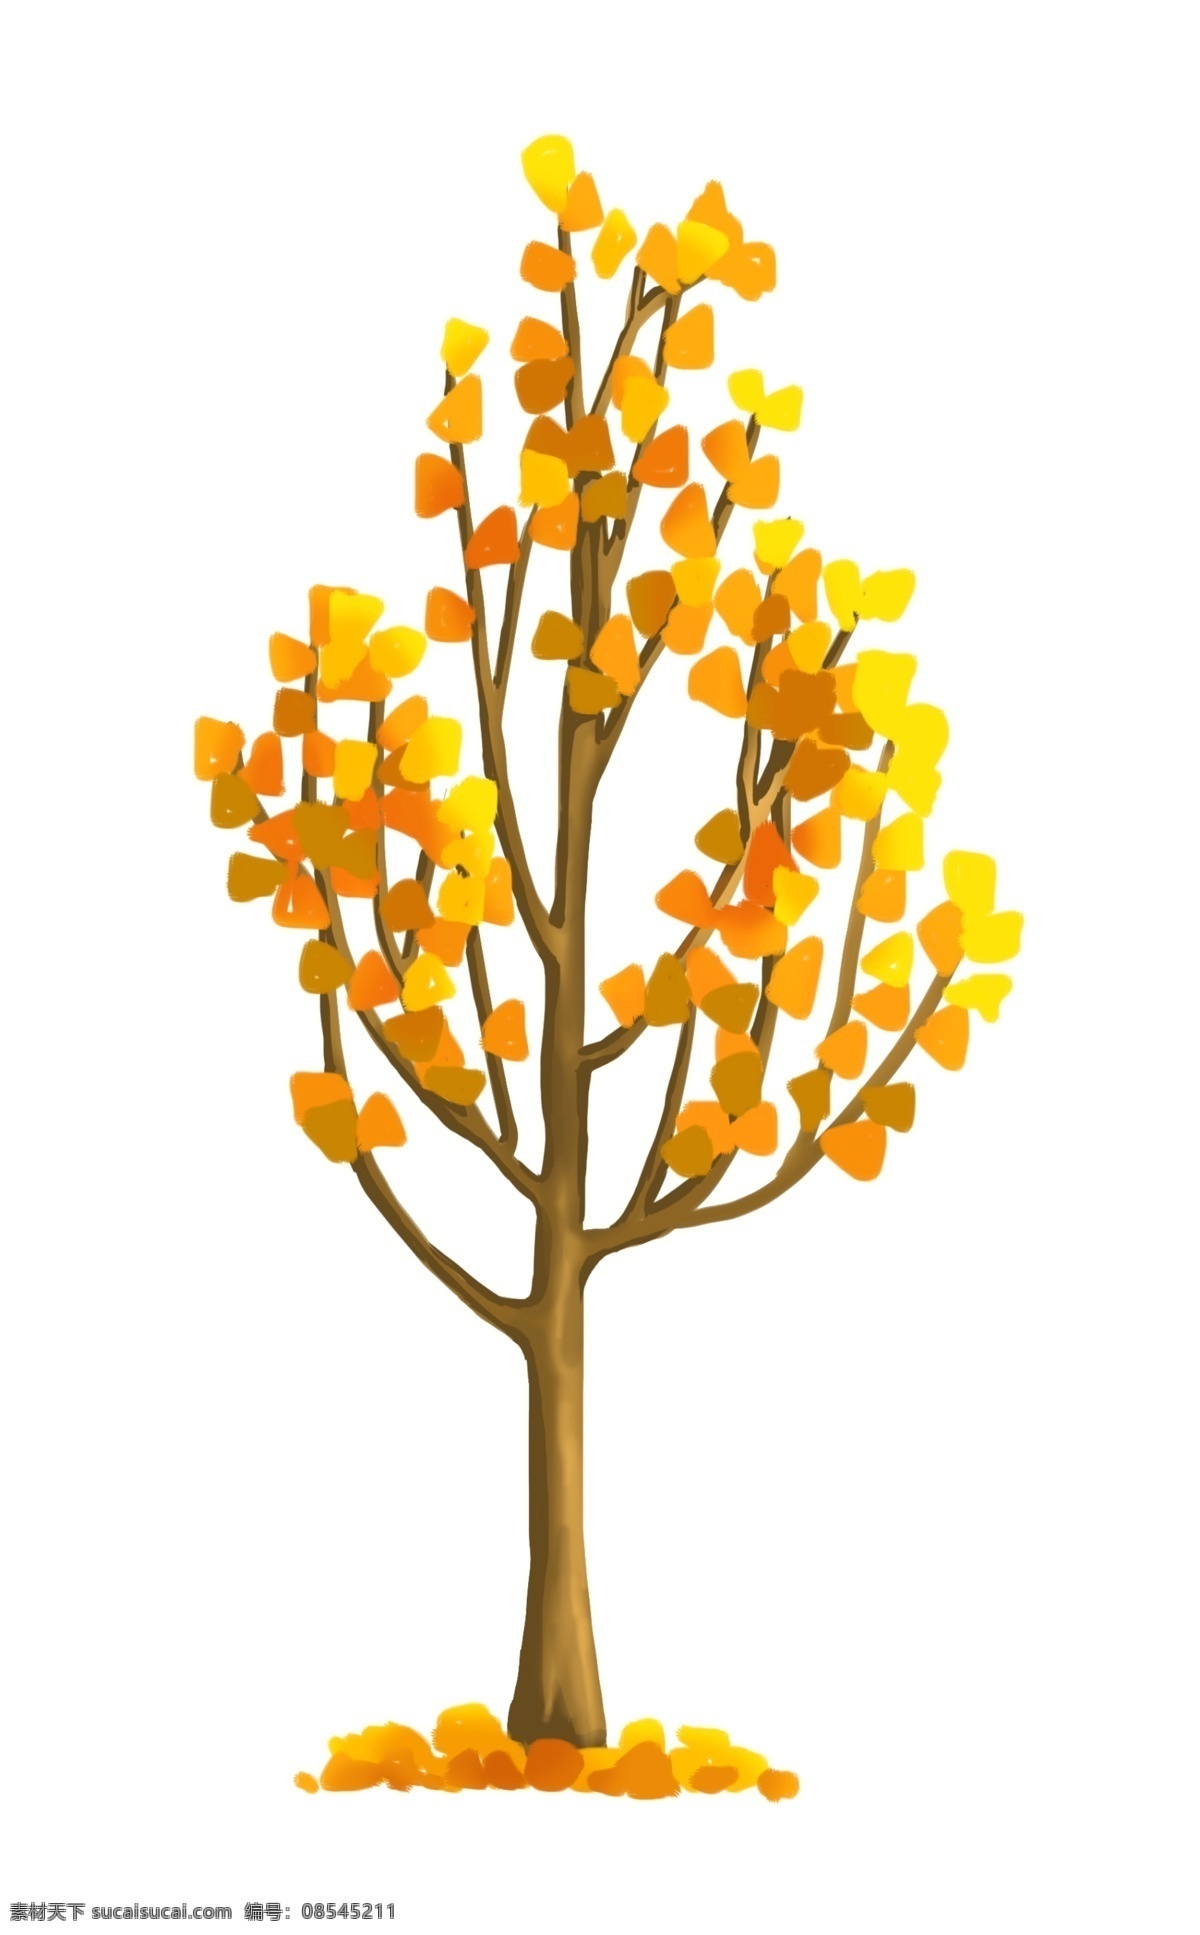 黄色 立体 大树 插图 秋季树木 黄色树叶 掉落的树叶 木质树木 树木插图 卡通树木 精美的树木 树木装饰